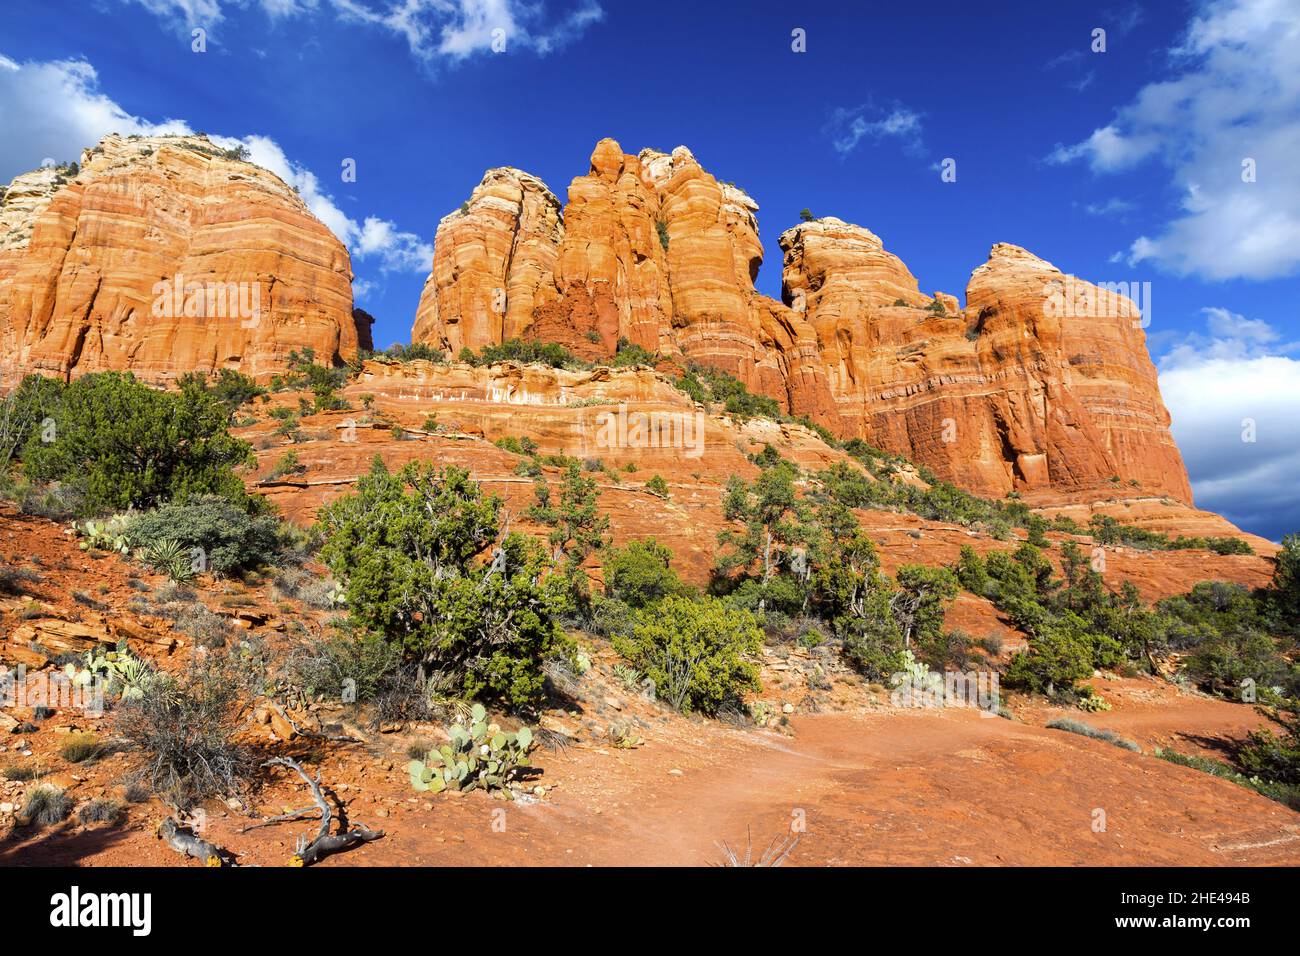 Scenografica Red Rock Formations Desert Landscape View. Cielo blu e nuvole bianche sopra Mountain Top. Bella giornata d'autunno escursioni Sedona, Arizona Stati Uniti d'America Foto Stock